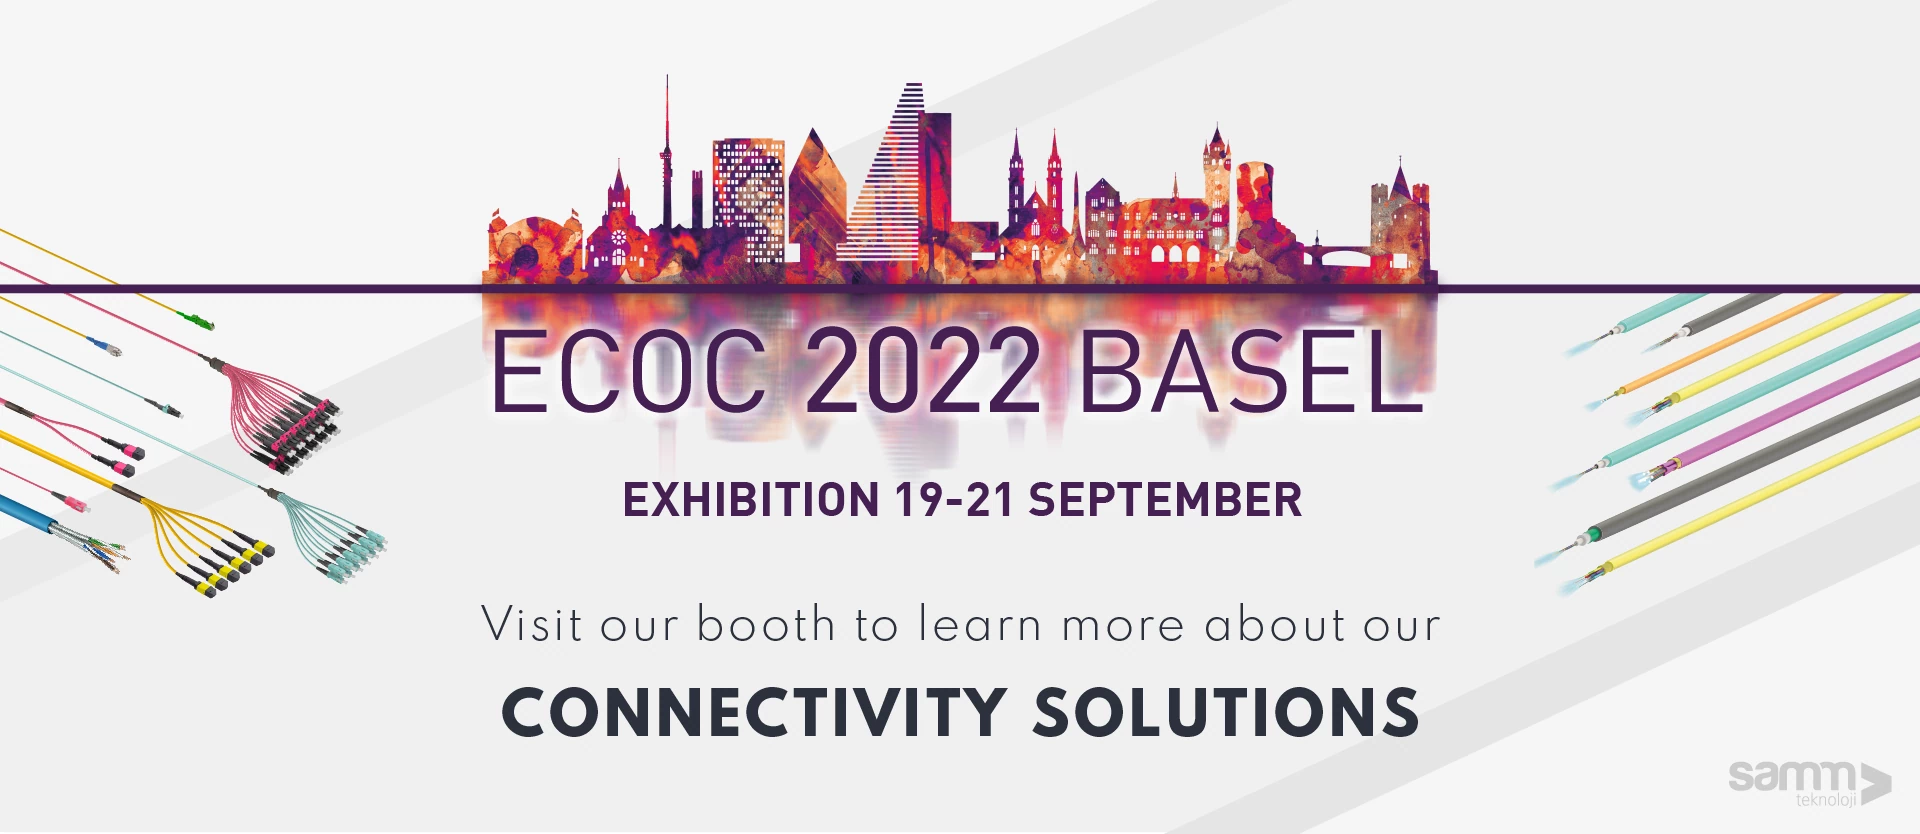 Samm Teknoloji Participates in The ECOC 2022 Basel Exhibition